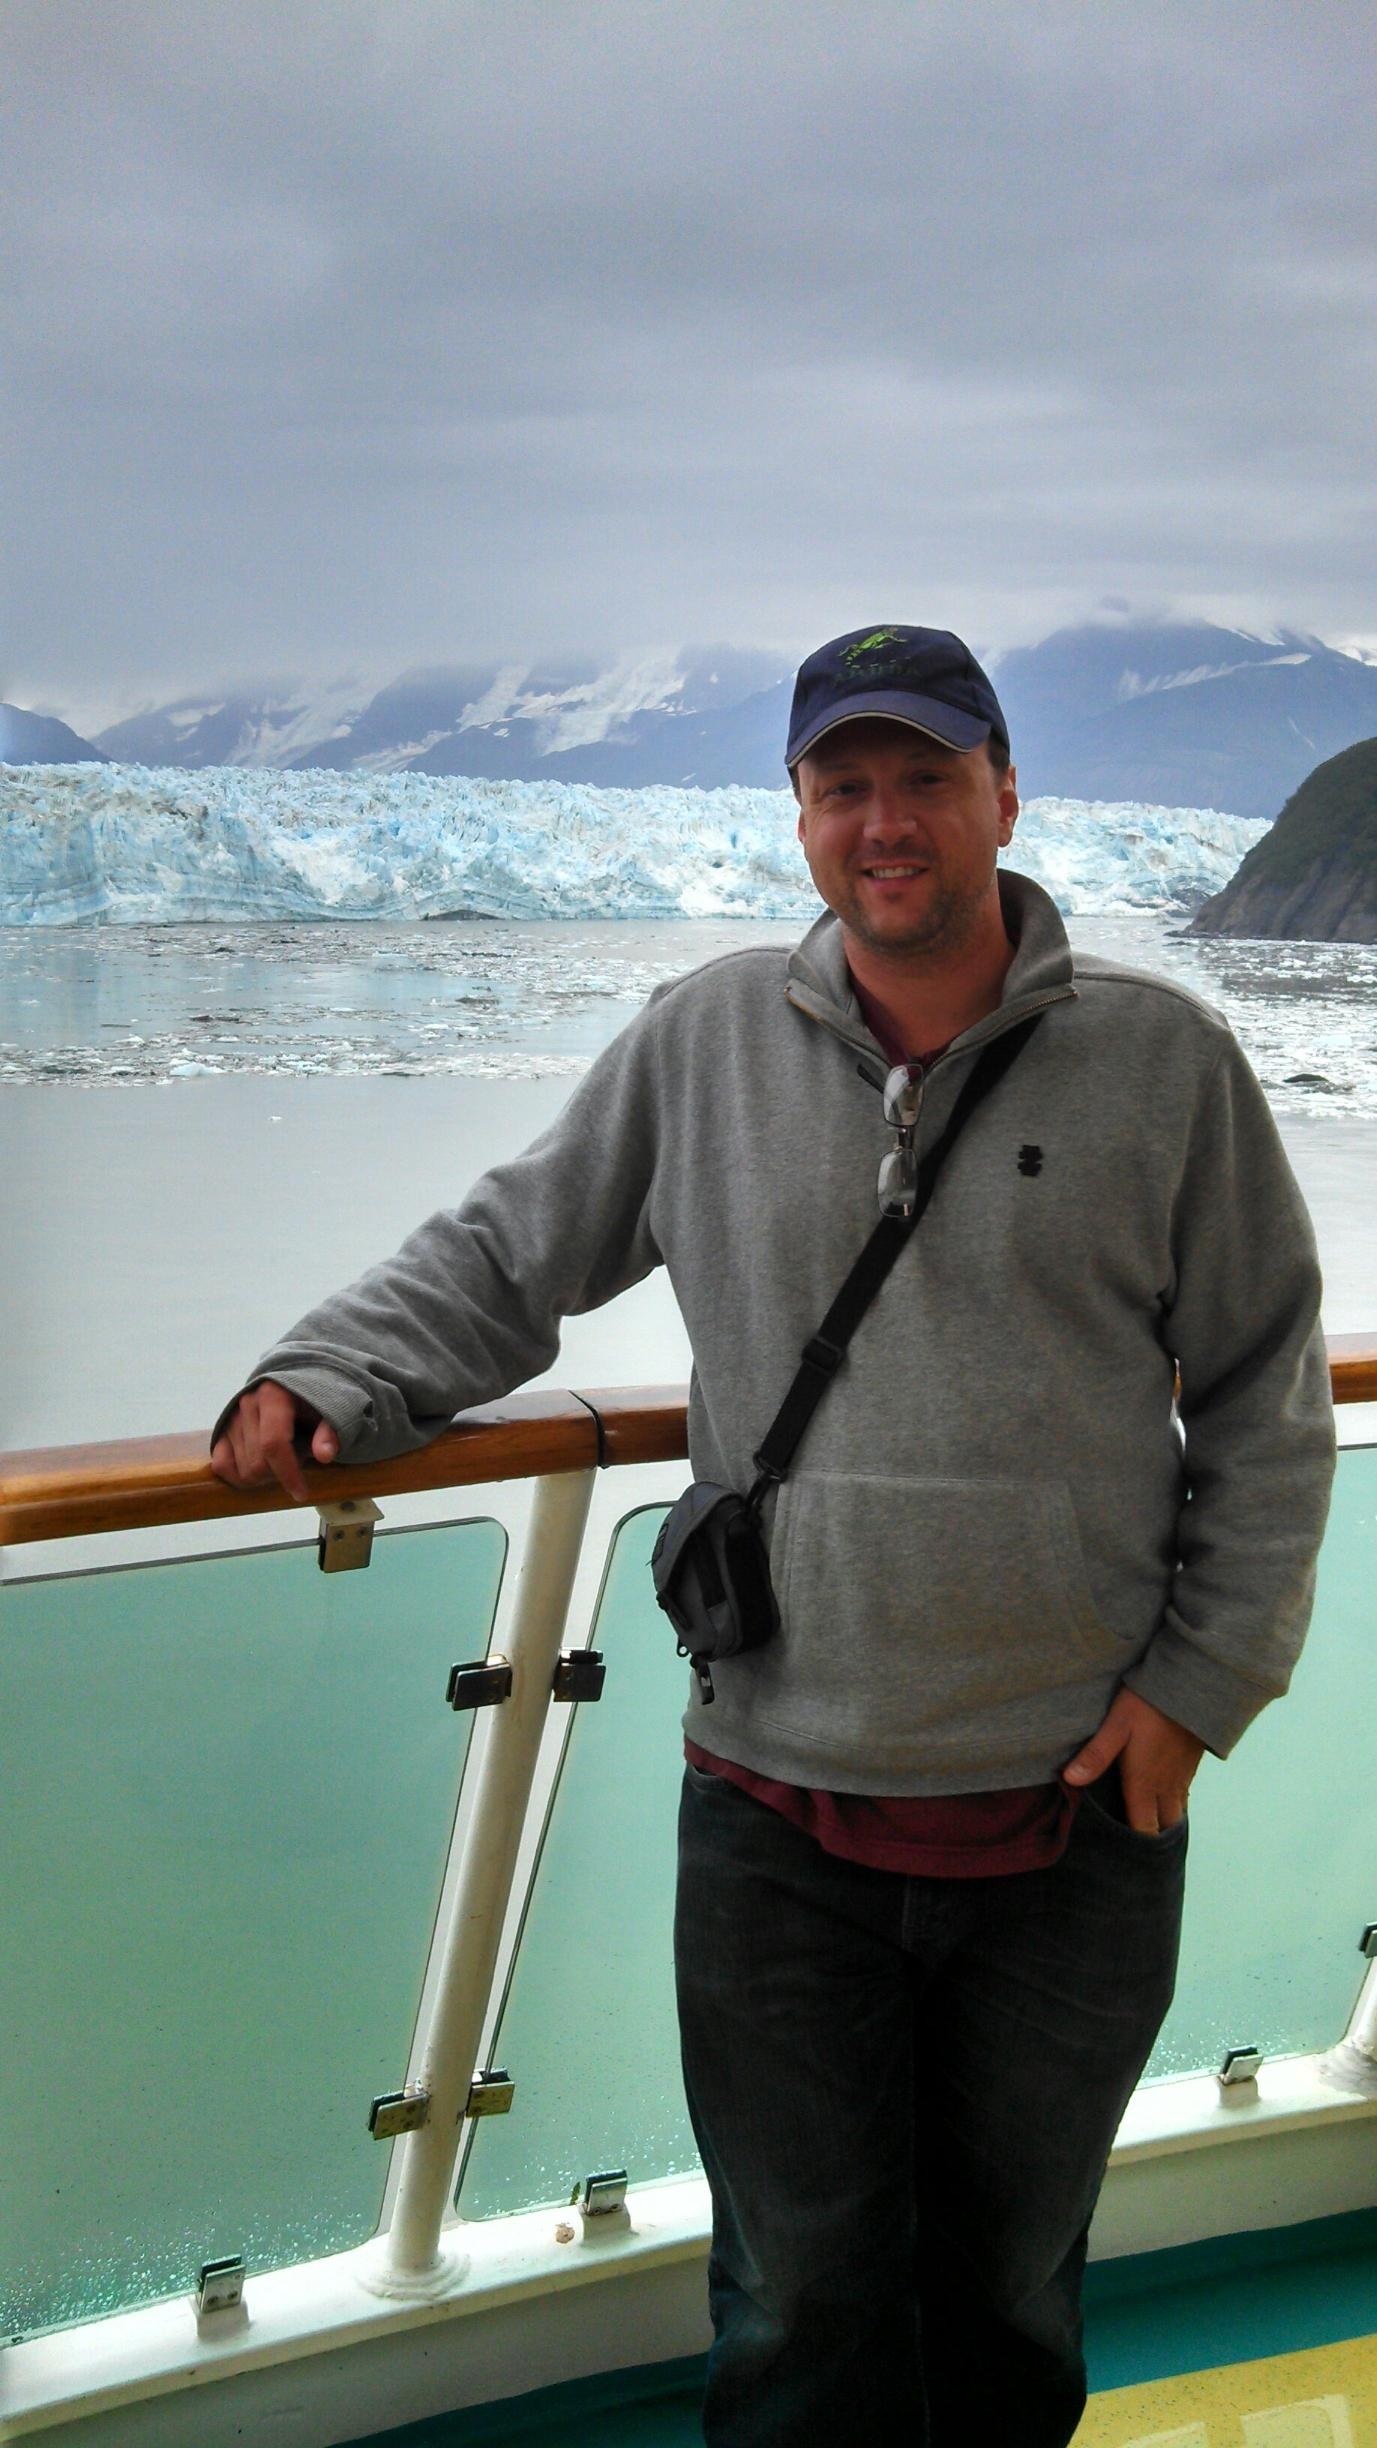 Bill Ehrin on arrival of venturing around The Hubbard Glacier, Alaska